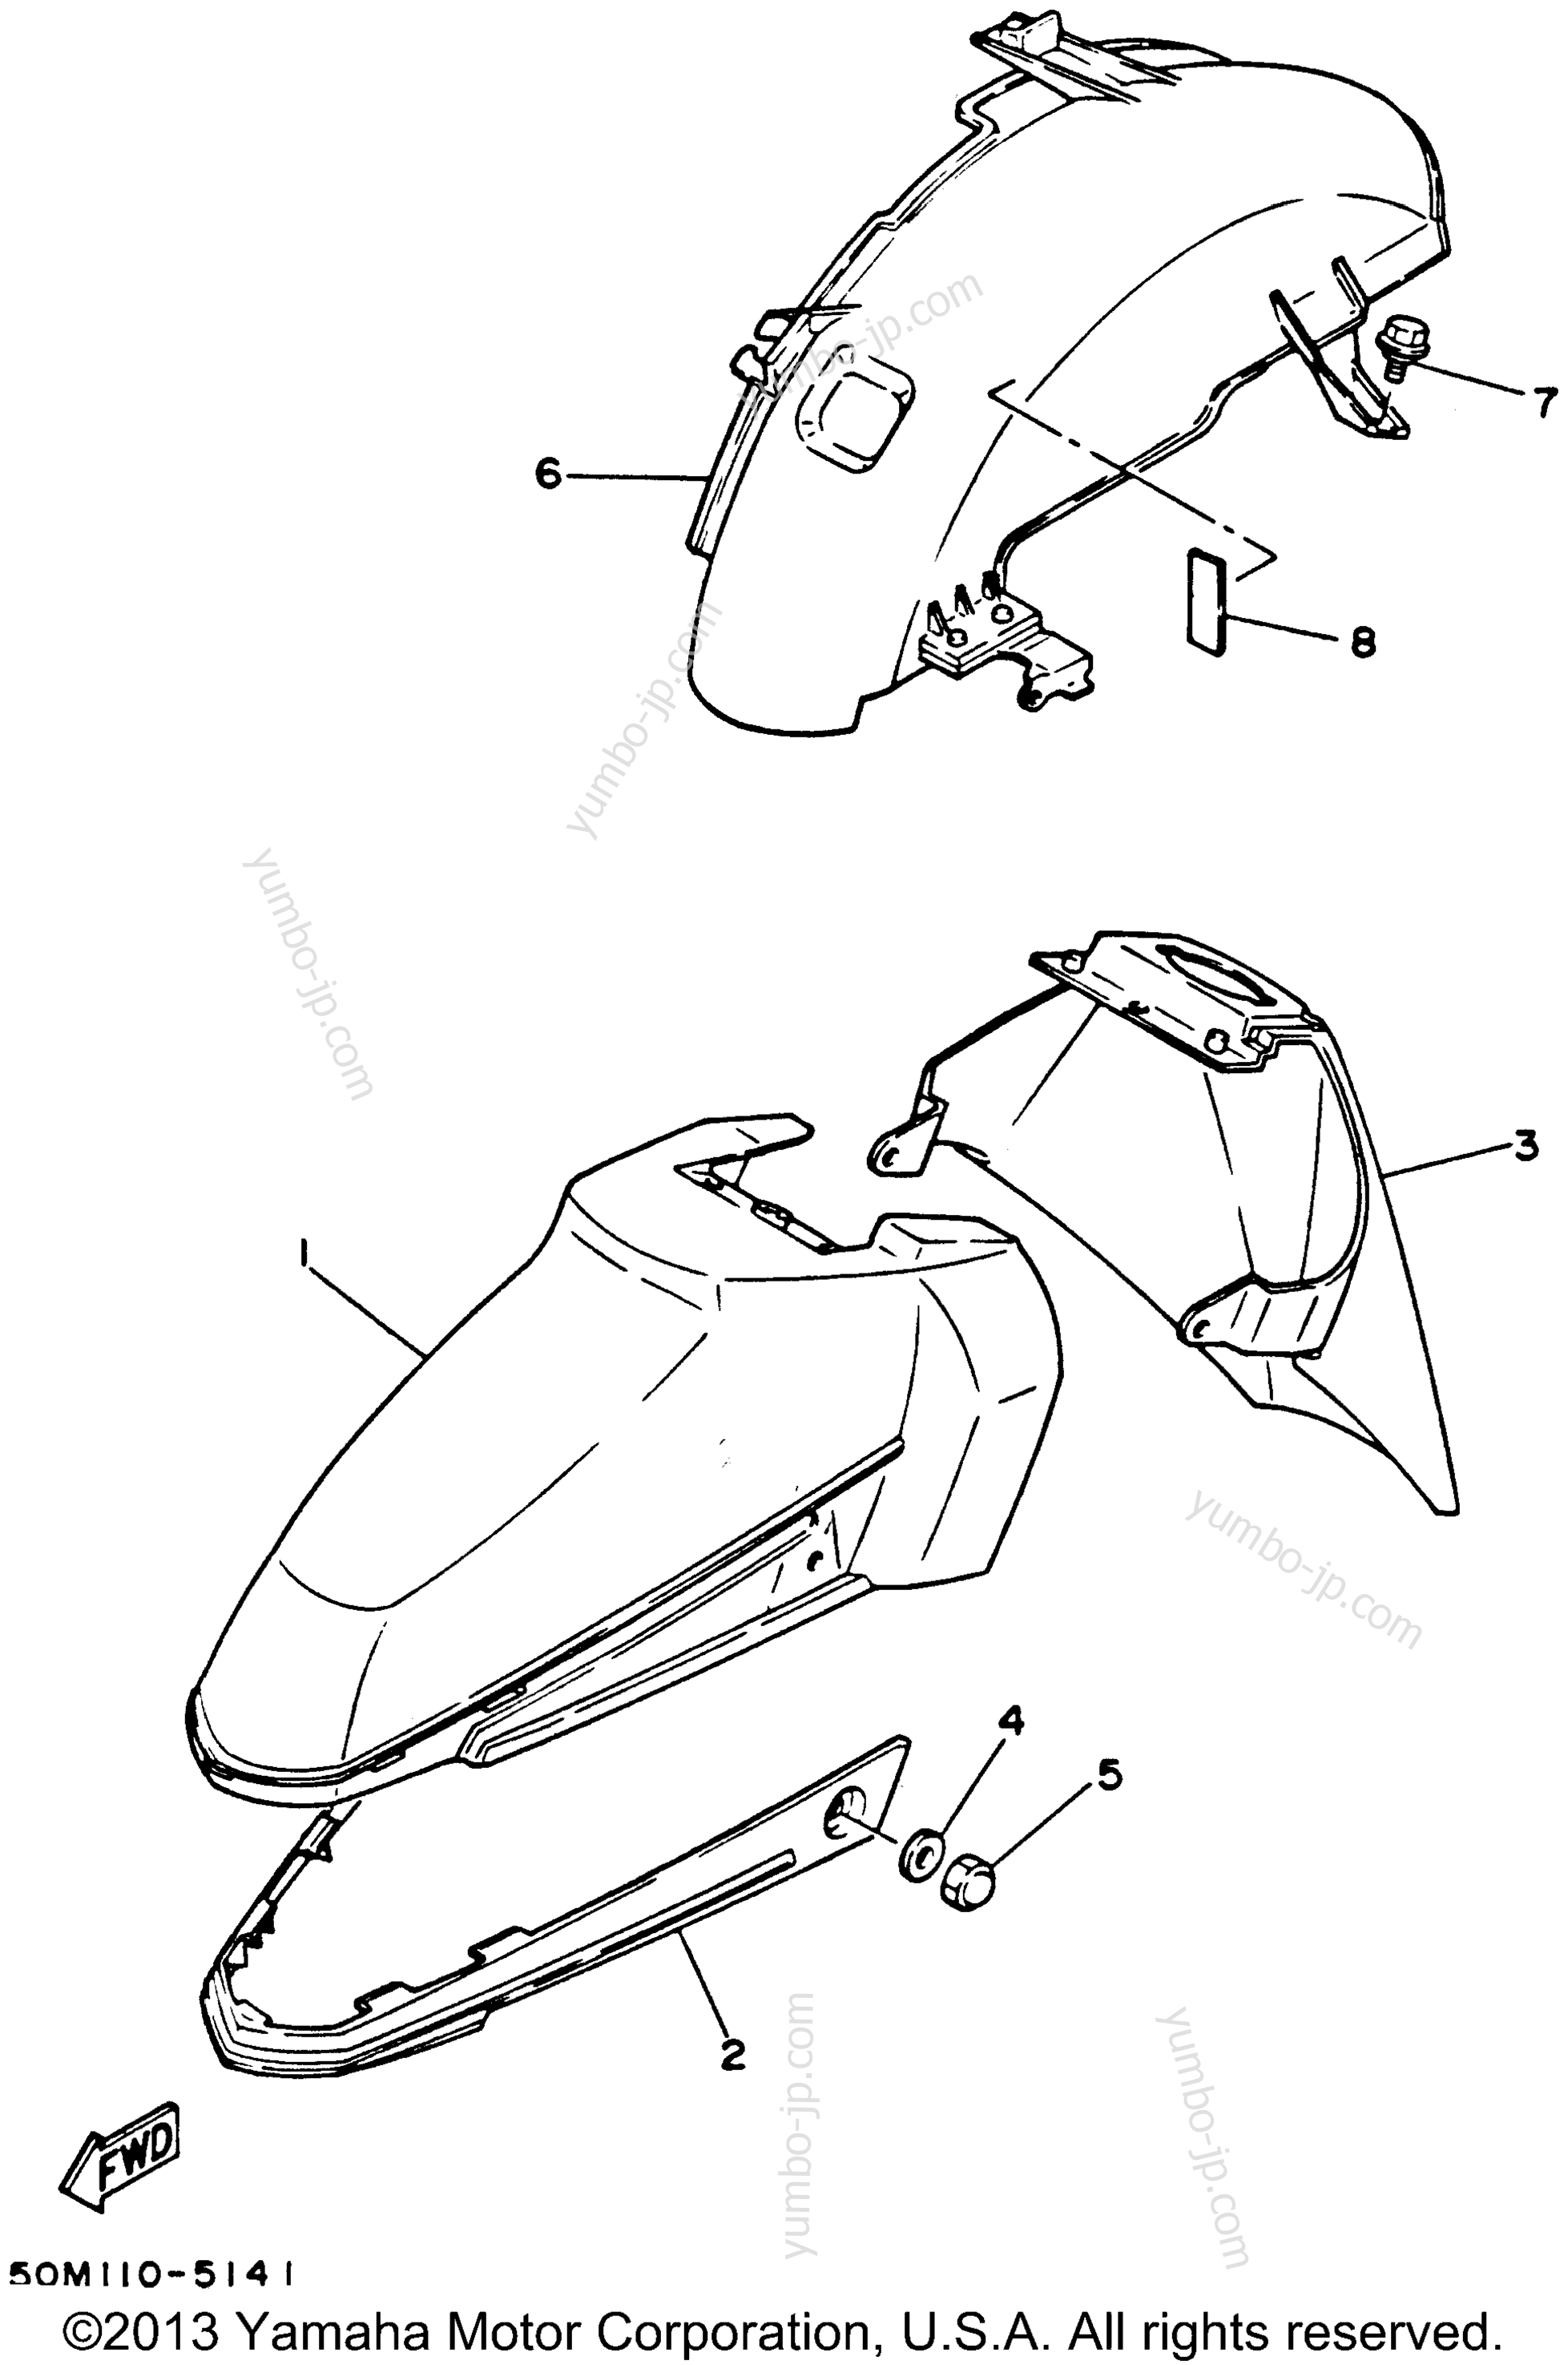 FENDER для скутеров YAMAHA RIVA 125 (XC125K) 1998 г.